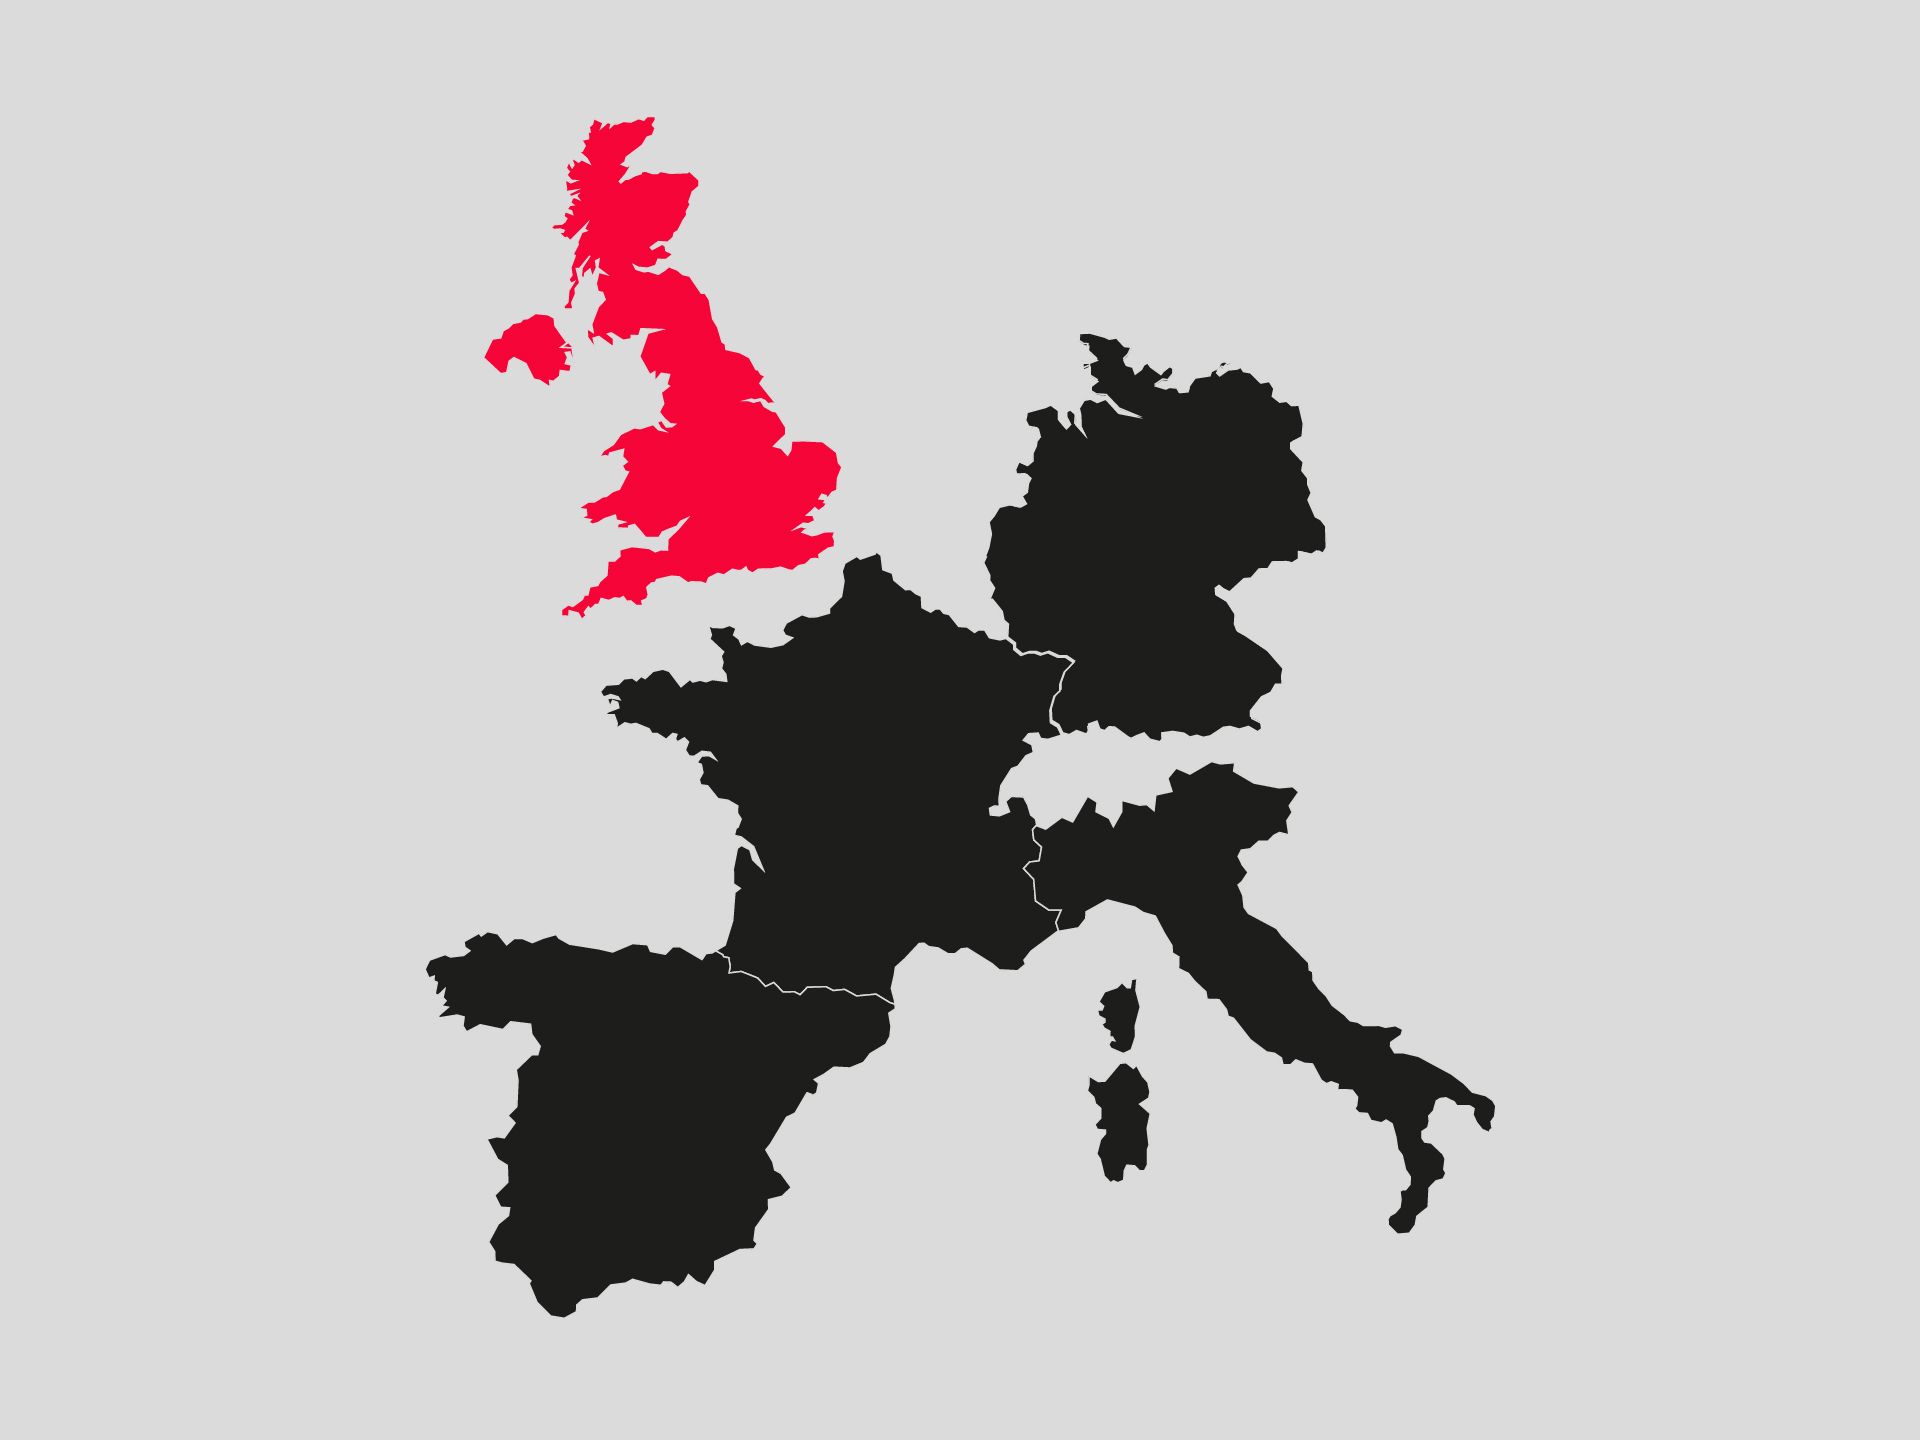 Auf dieser Illustration von Europa ist Großbritannien farblich hervorgehoben.